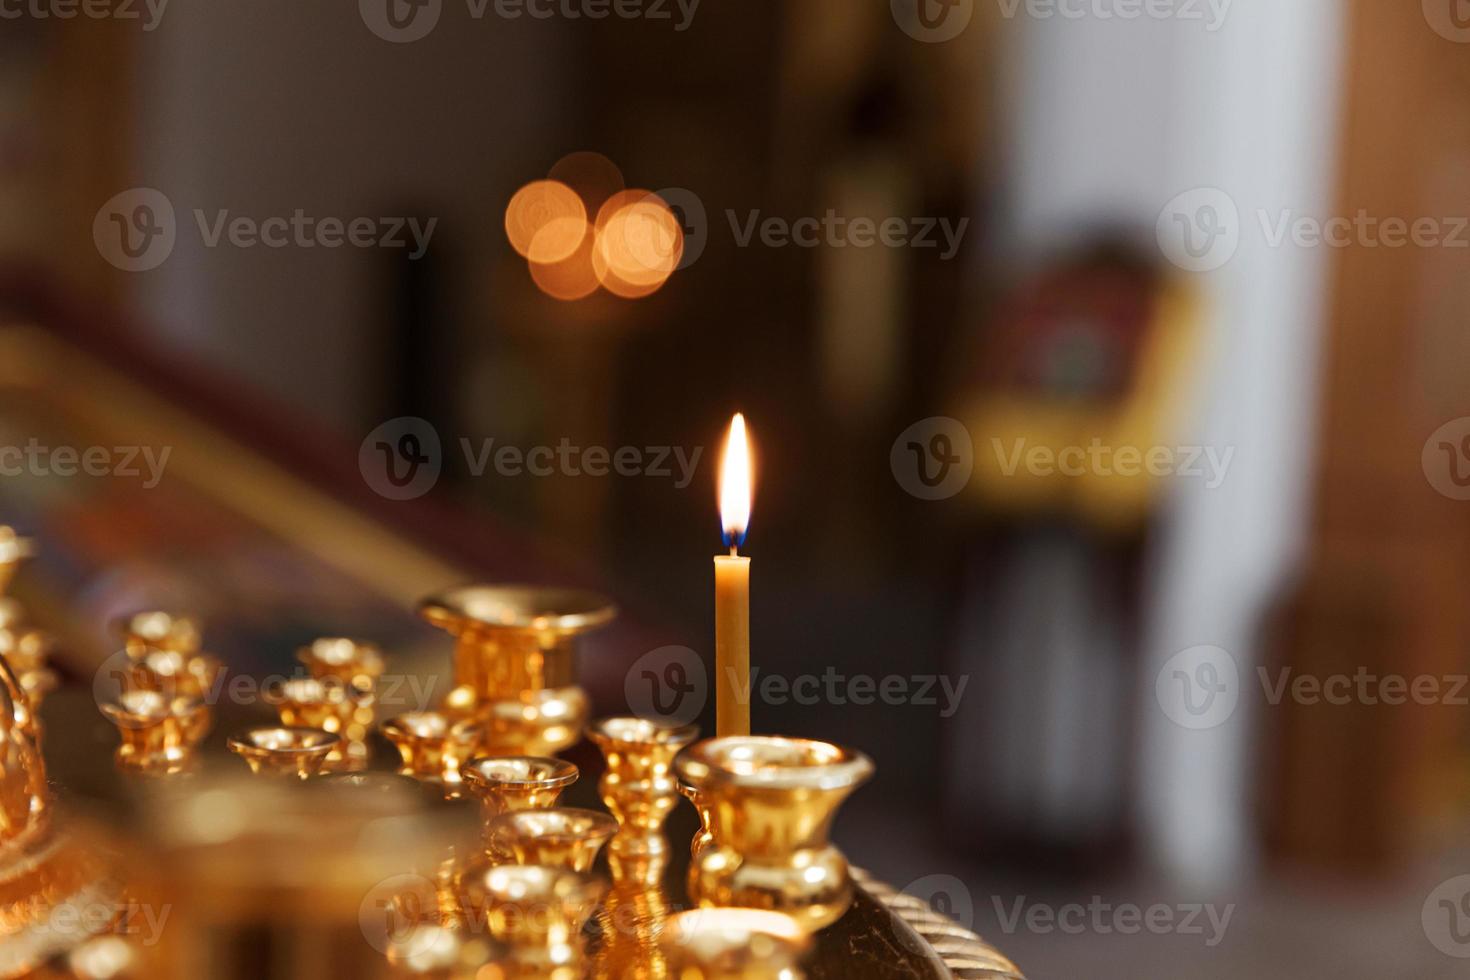 Orthodoxe Kirche. Christentum. festliche innendekoration mit brennenden kerzen und symbol in der traditionellen orthodoxen kirche am osterabend oder an weihnachten. Religion Glaube beten Symbol. foto